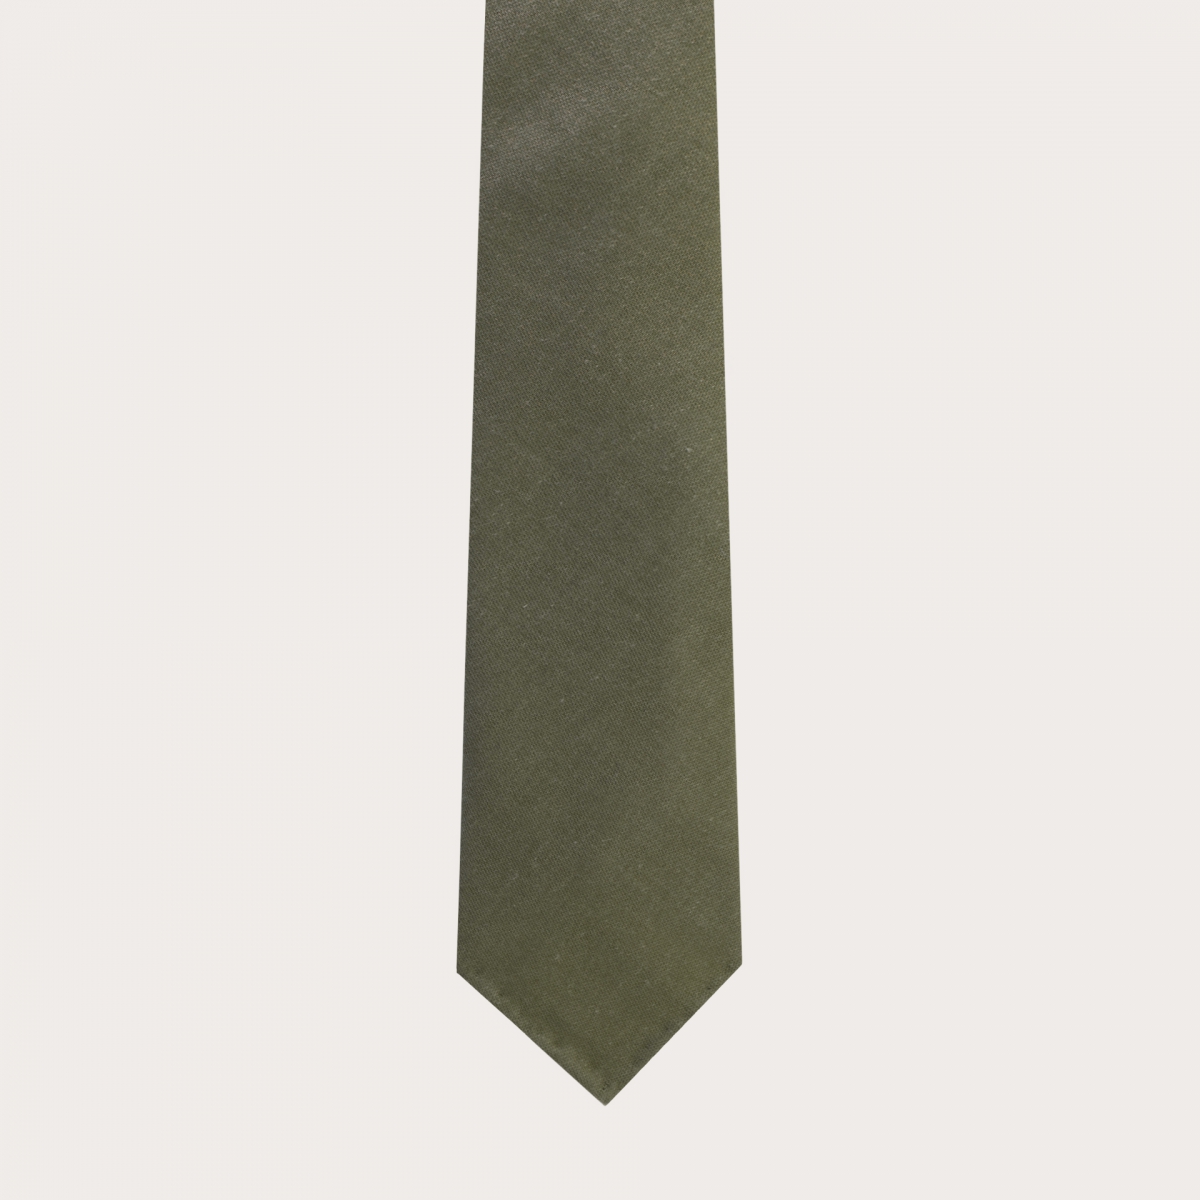 Cravate sans doublure vert en soie et chavre